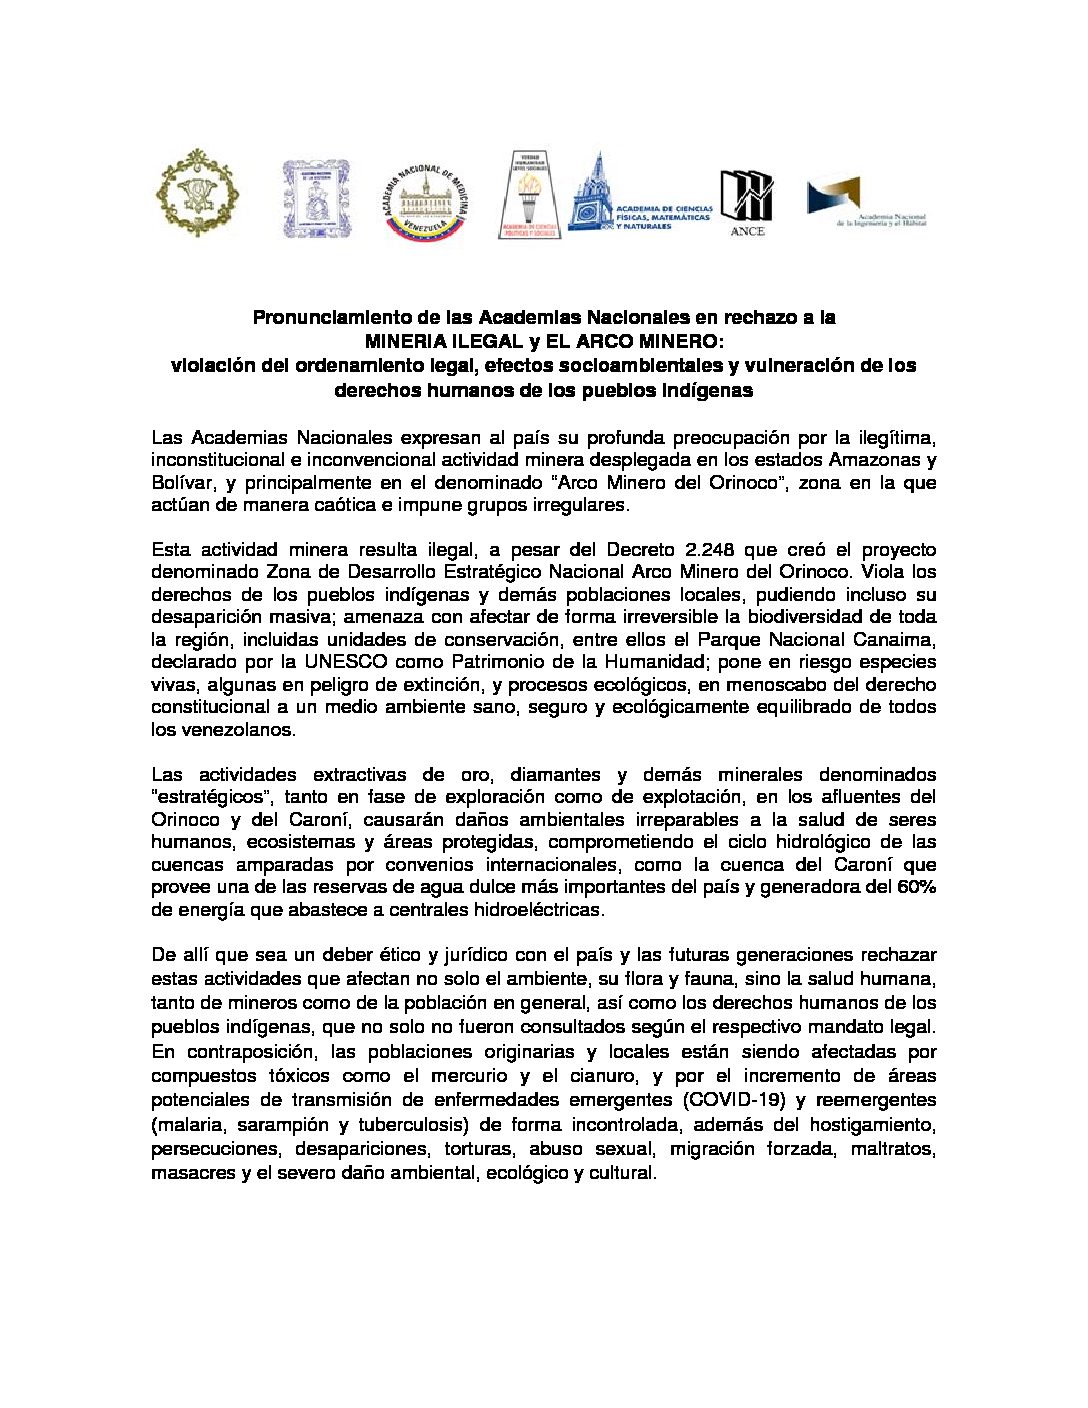 Pronunciamiento de las Academias Nacionales en rechazo a la MINERÍA ILEGAL y EL ARCO MINERO